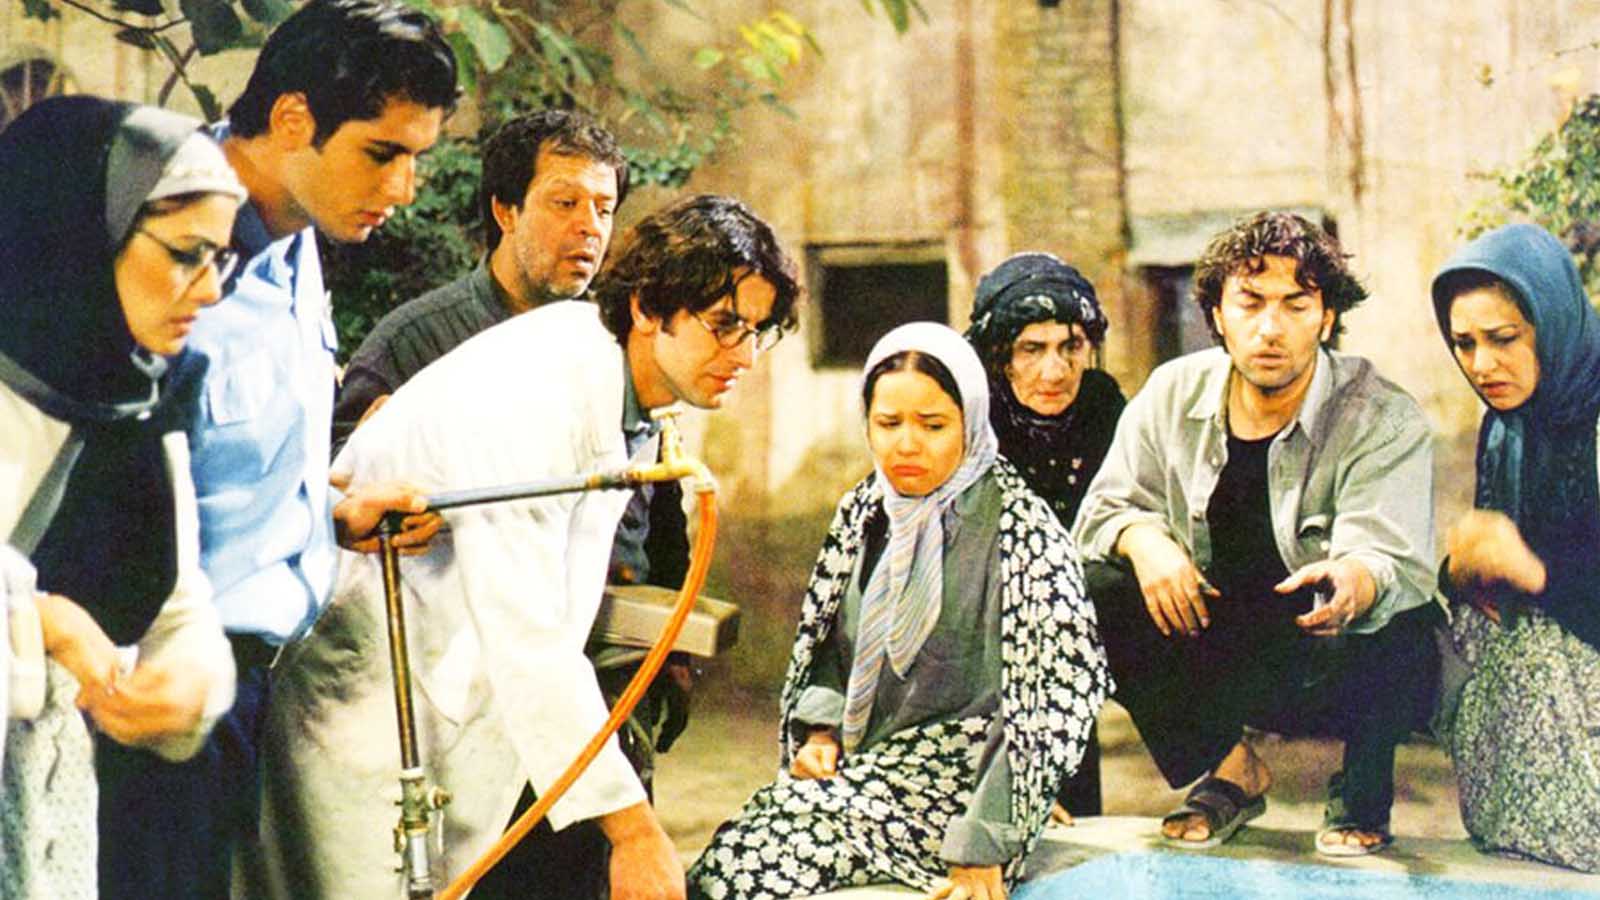 فیلم های کمدی ایرانی که ارزش دیدن دارند فیلم کمدی ایرانی جدید